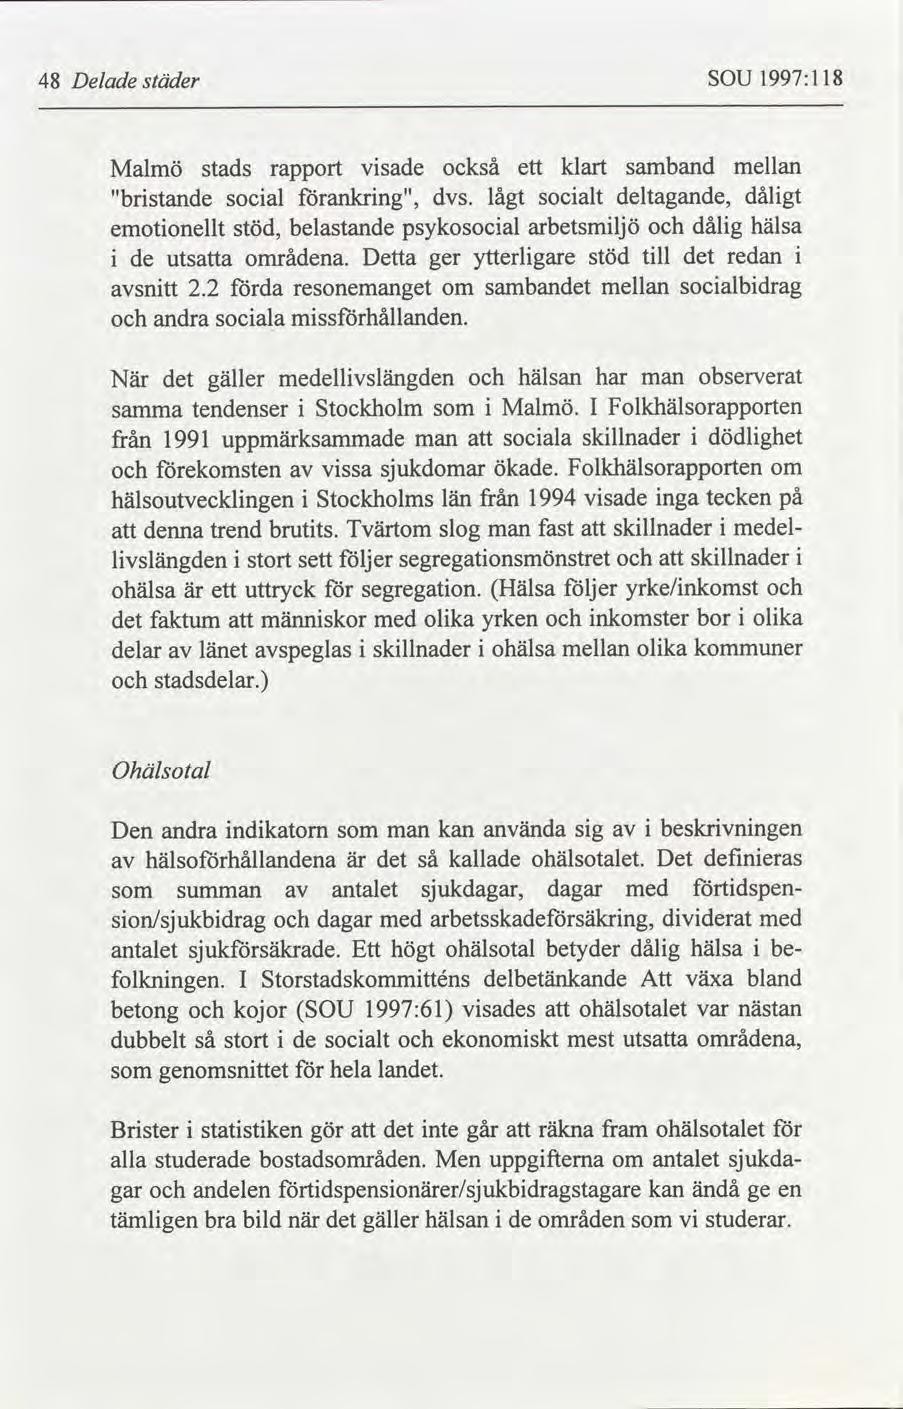 48 Delade städer SOU 1997:118 Malmö "bristande emotionellt stads social stöd, rapport visade förankring", belastande också dvs. psykosocial i de utsatta områdena. Detta ger förda avsnitt 2.